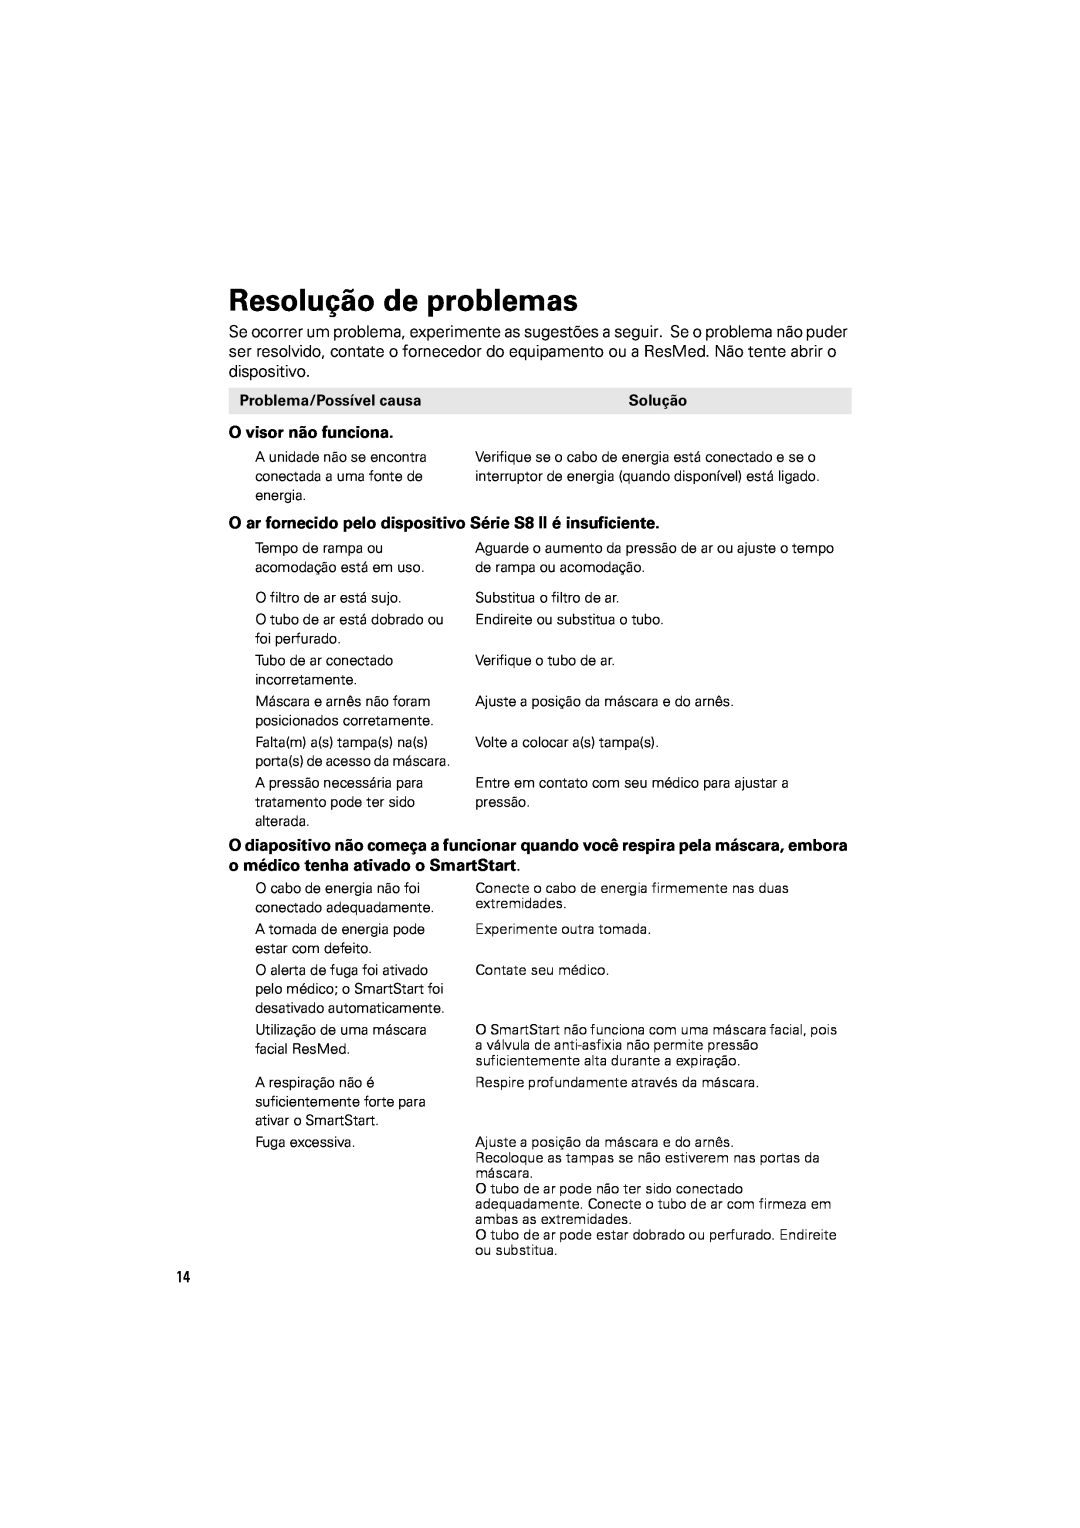 ResMed s8 manual Resolução de problemas 